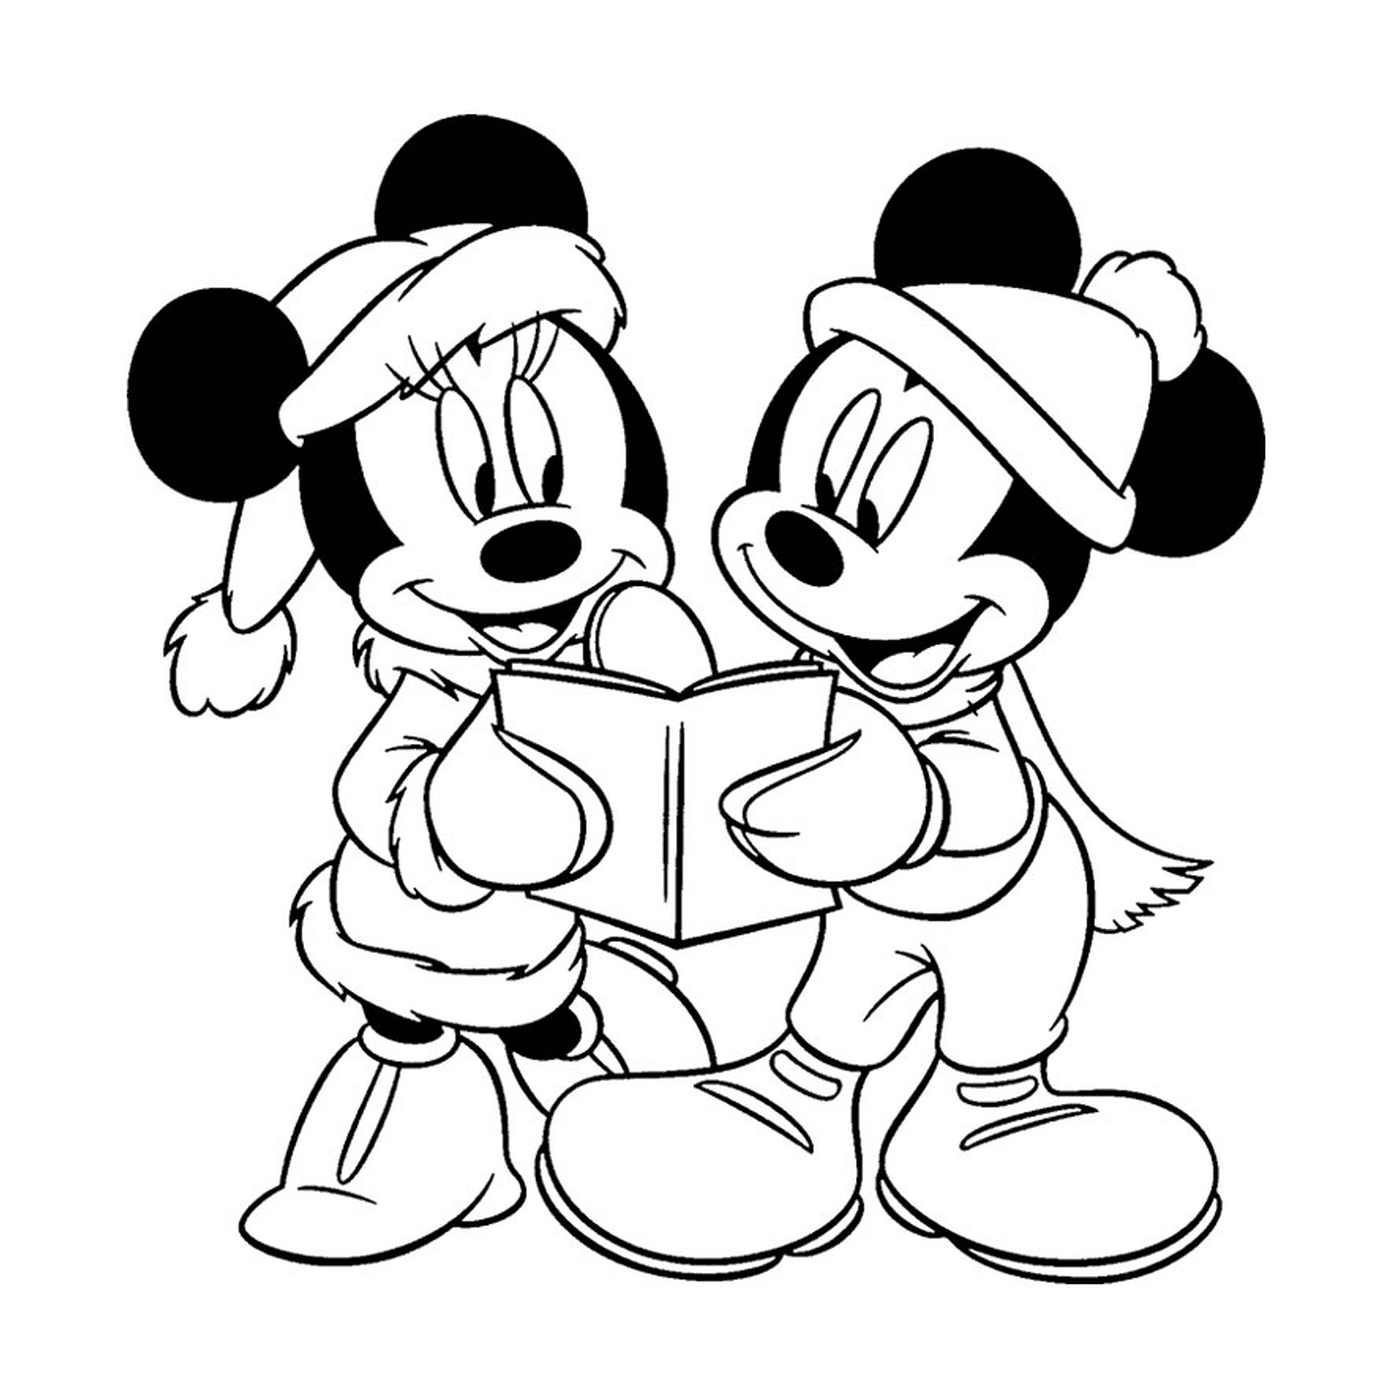  Topolino e Minnie Mouse hanno letto un libro insieme 